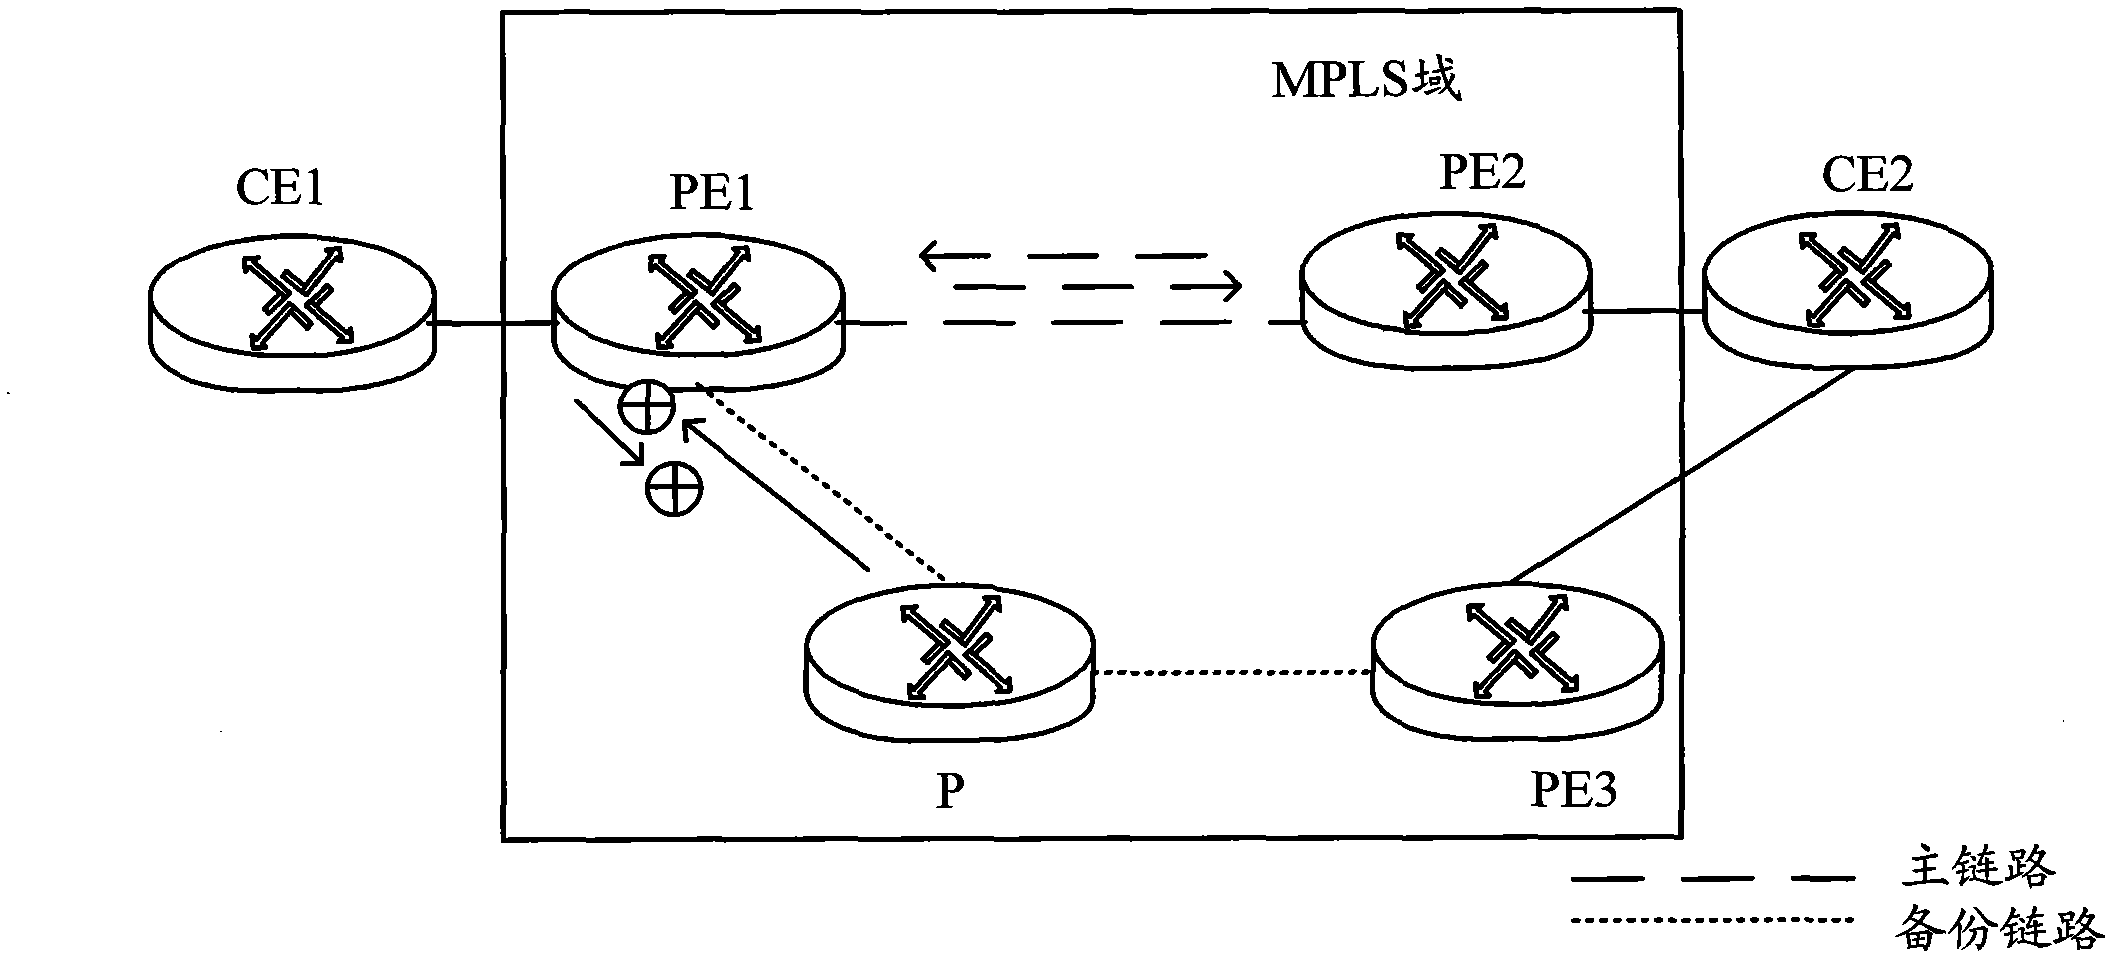 Method and device for transmitting data message based on PW (Packet Writing) redundant backup